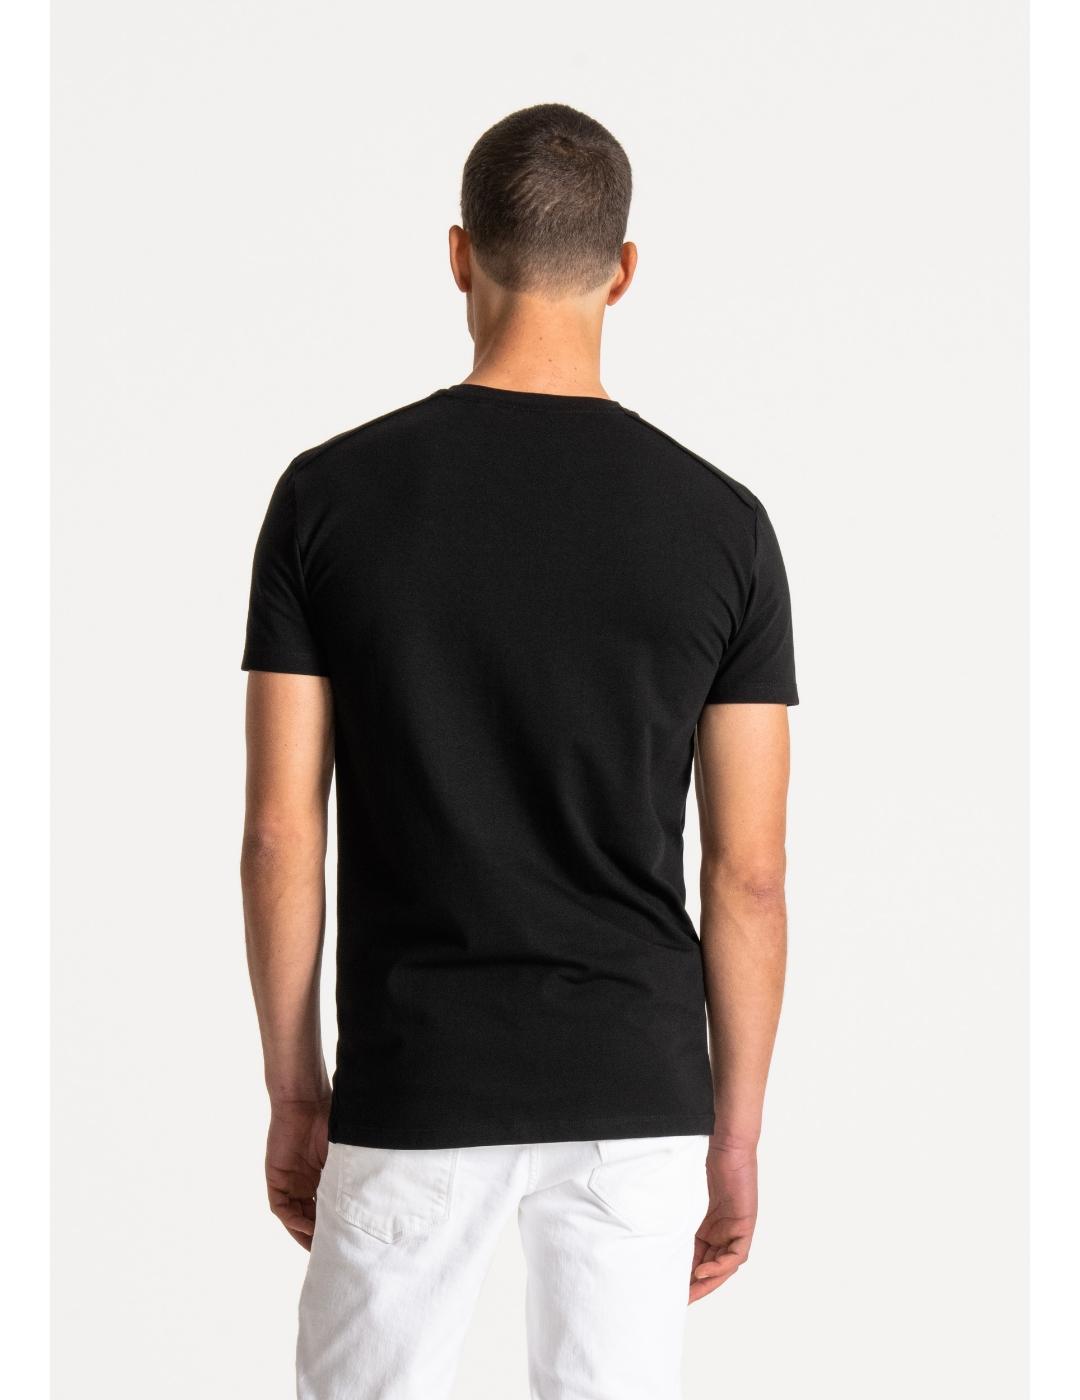 Camiseta Antony Morato basica chapa negra para hombre